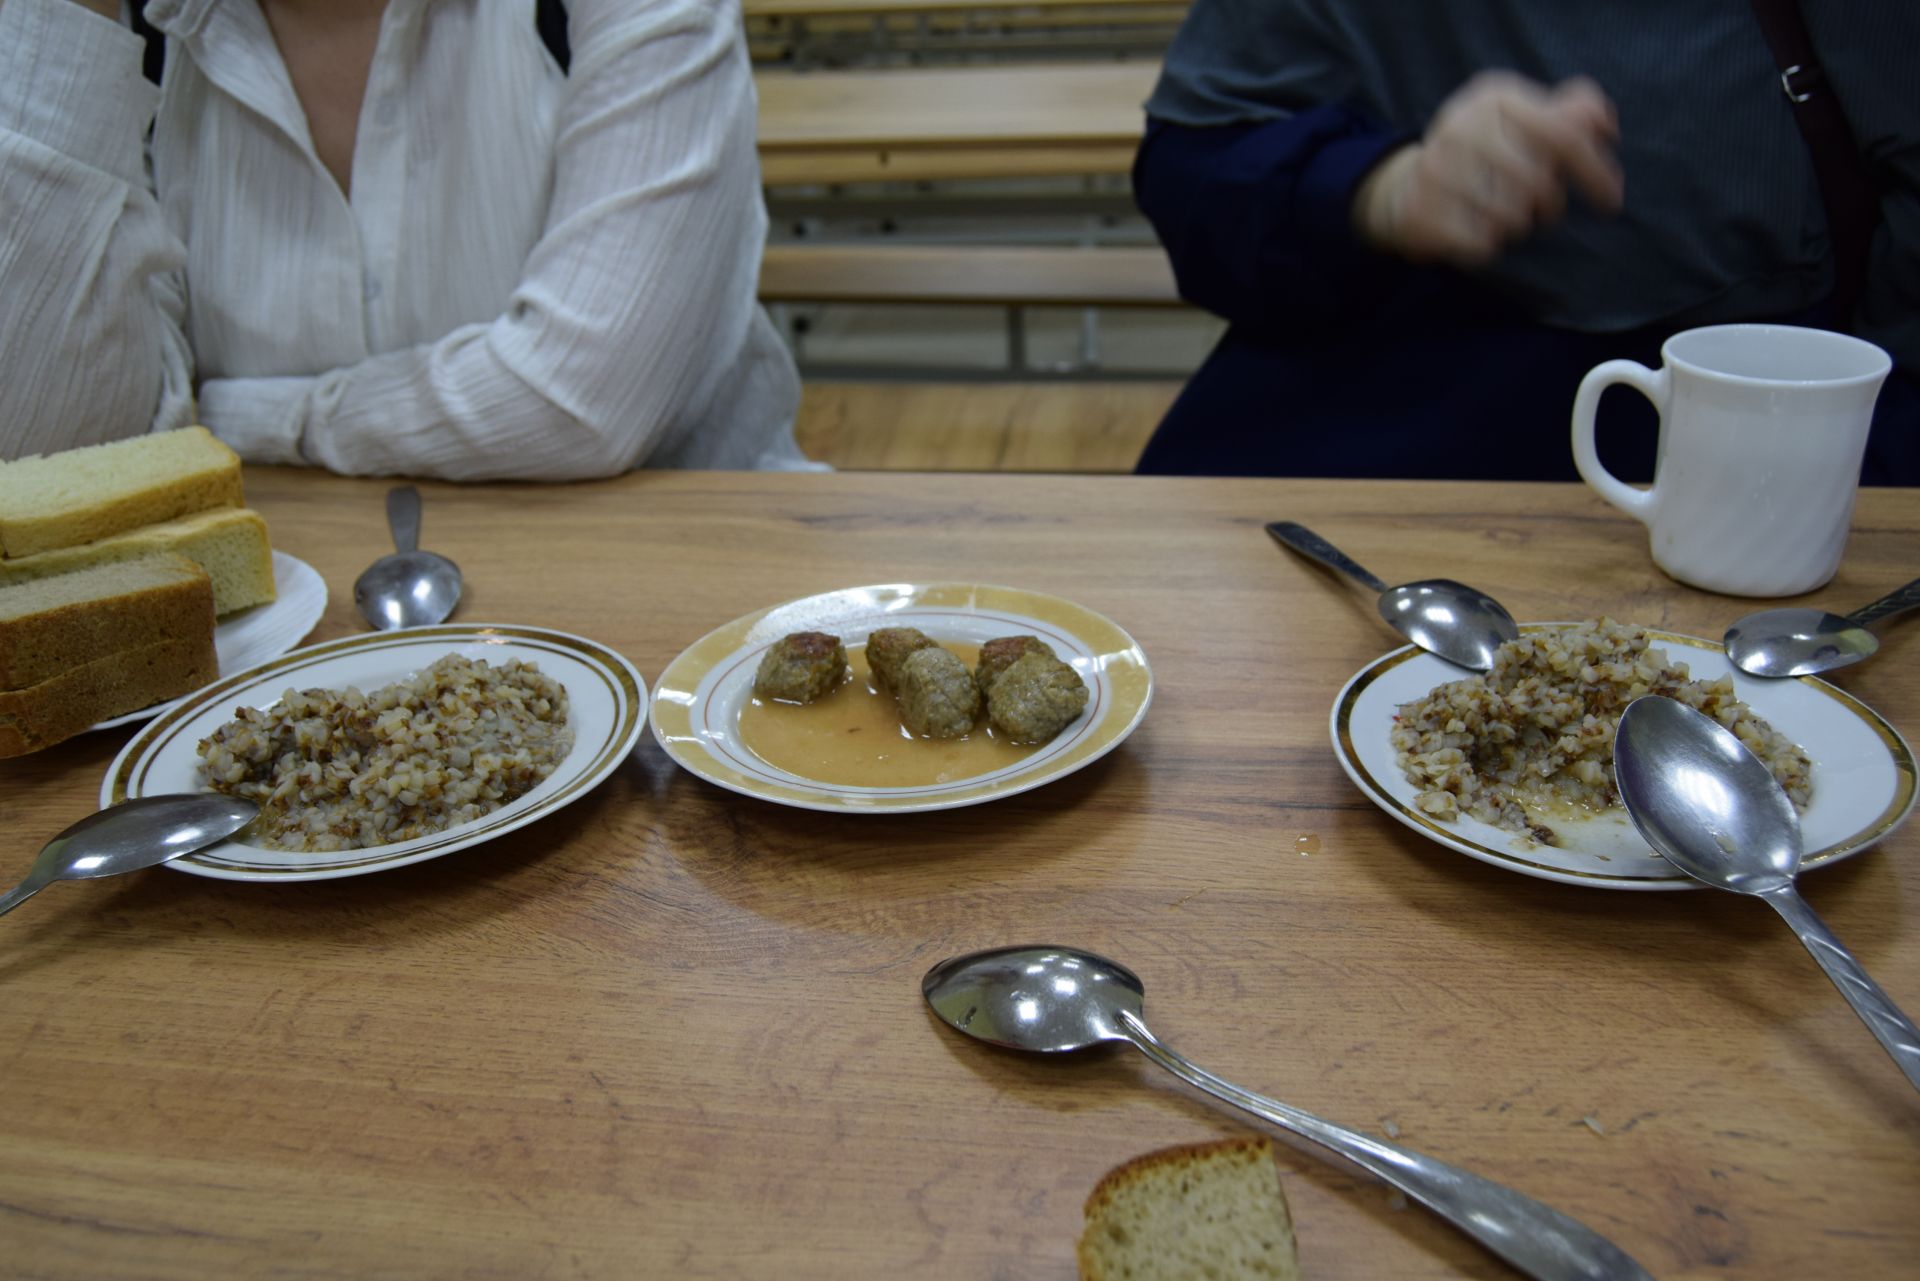 В Уруссинской школе №2 родители поучаствовали в контроле школьного питания